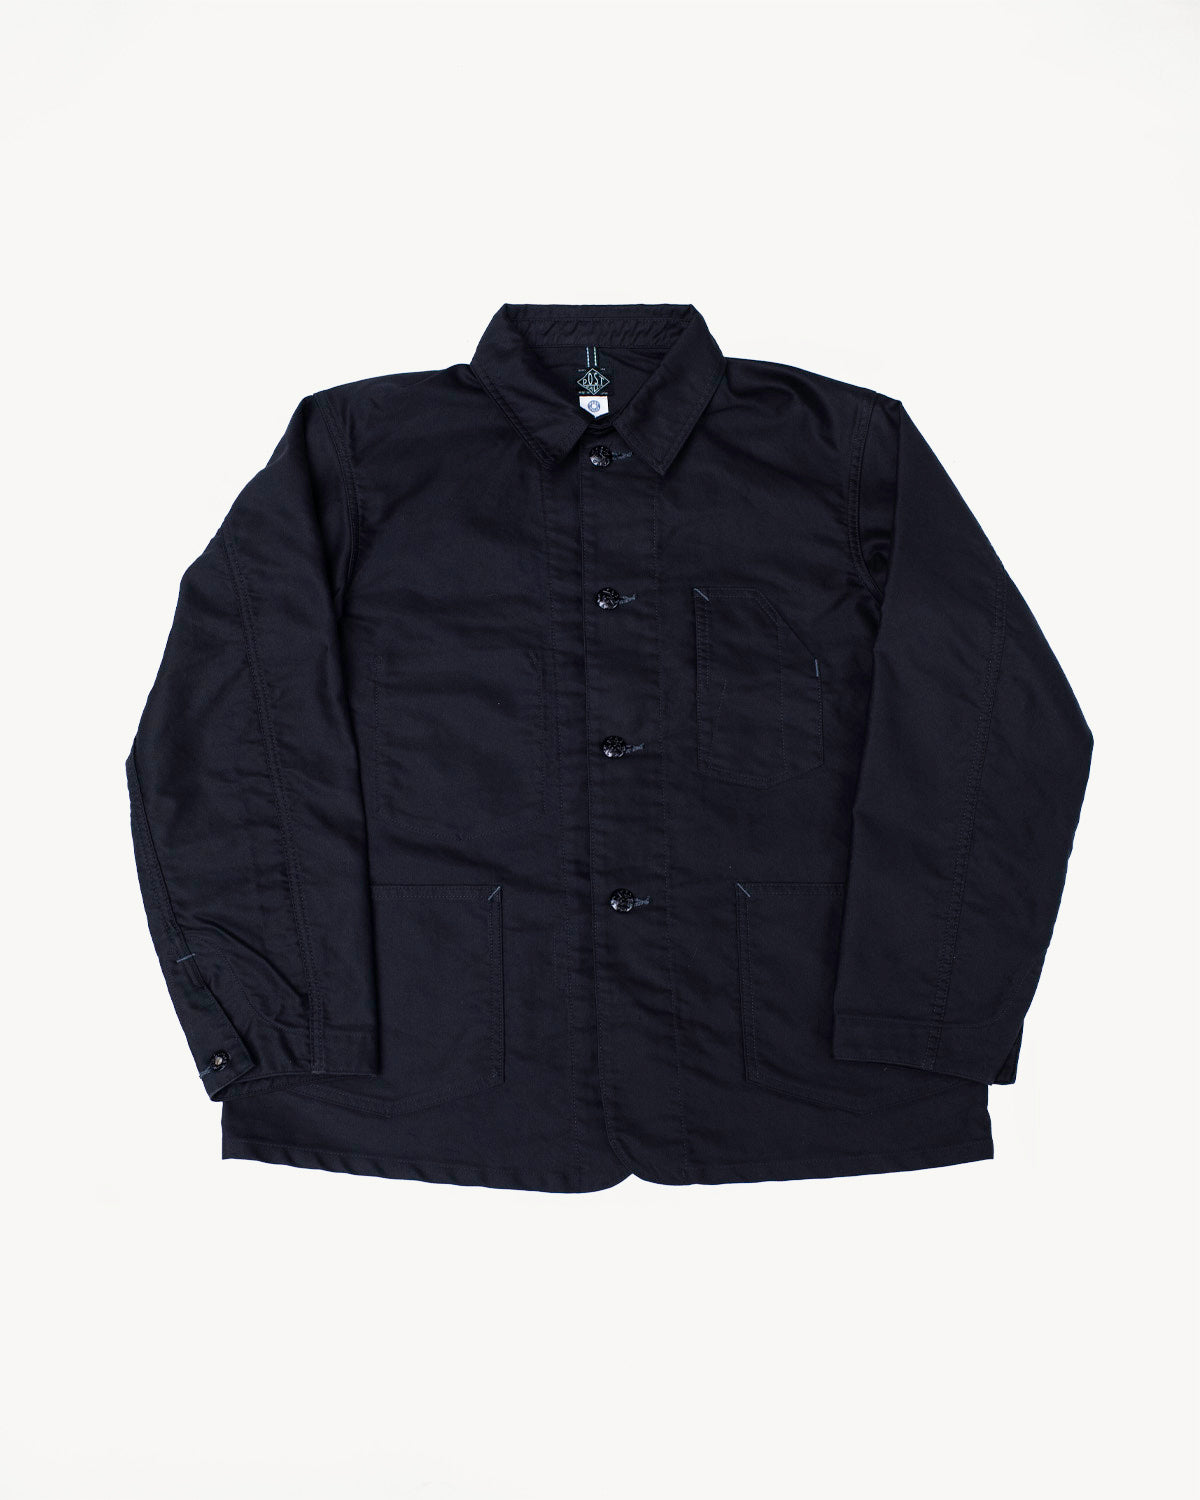 1101-MB - No. 1 Jacket Vintage Moleskin - Black | James Dant